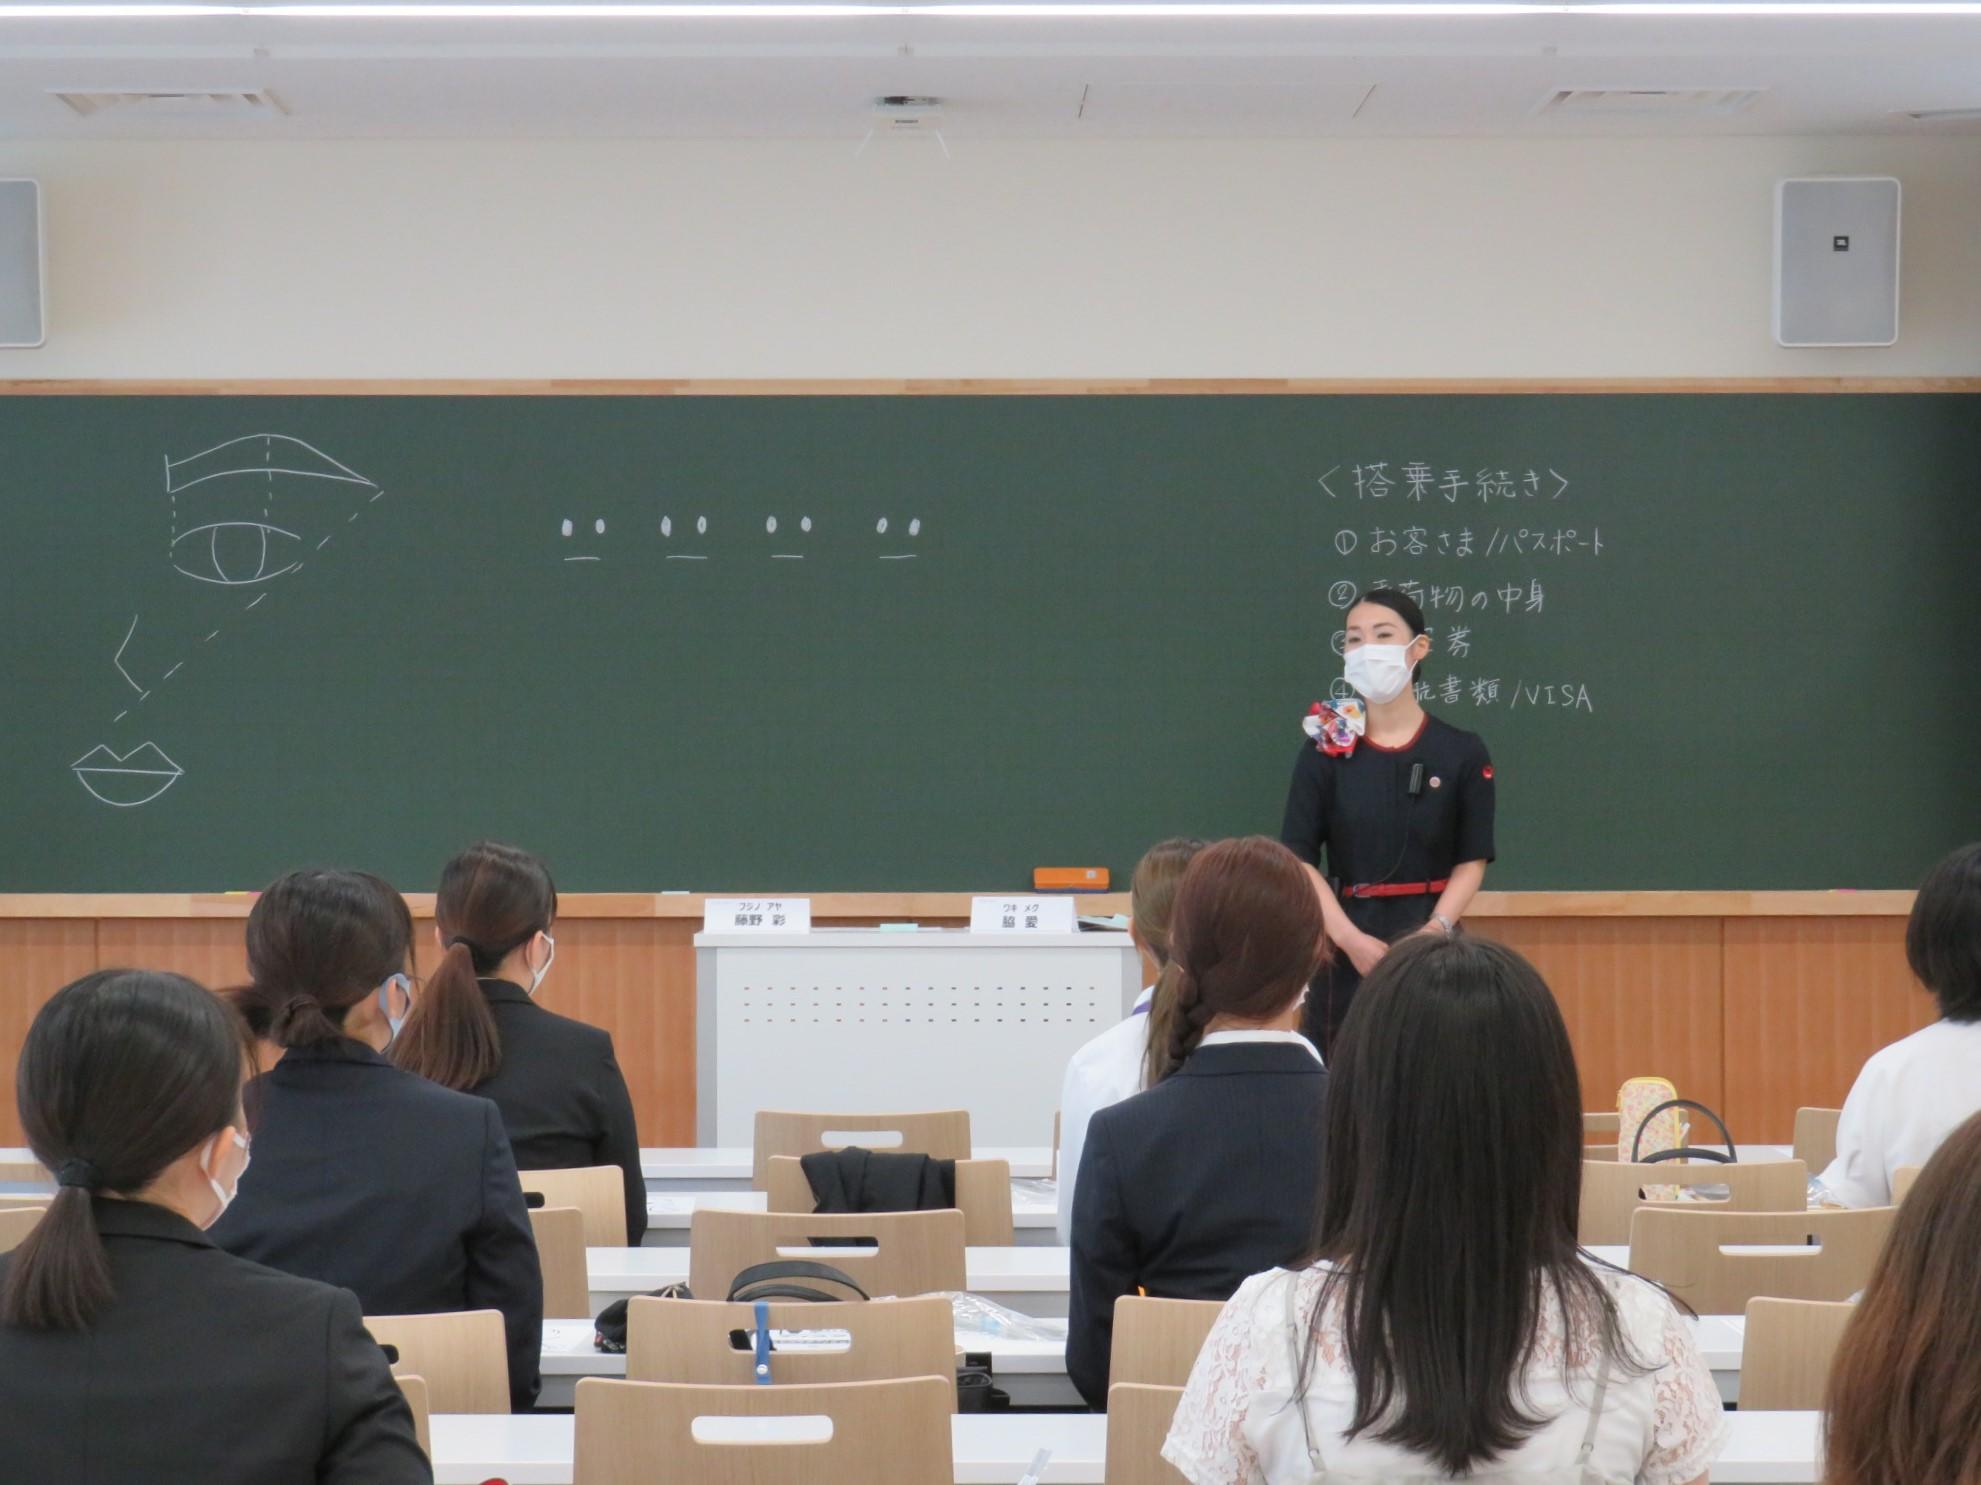 日本の''おもてなし''を学ぶ大妻女子大学の夏季集中講義「地域文化理解I」に京都女子大学の学生も受講 -- 包括協定に基づき、昨年度から開講